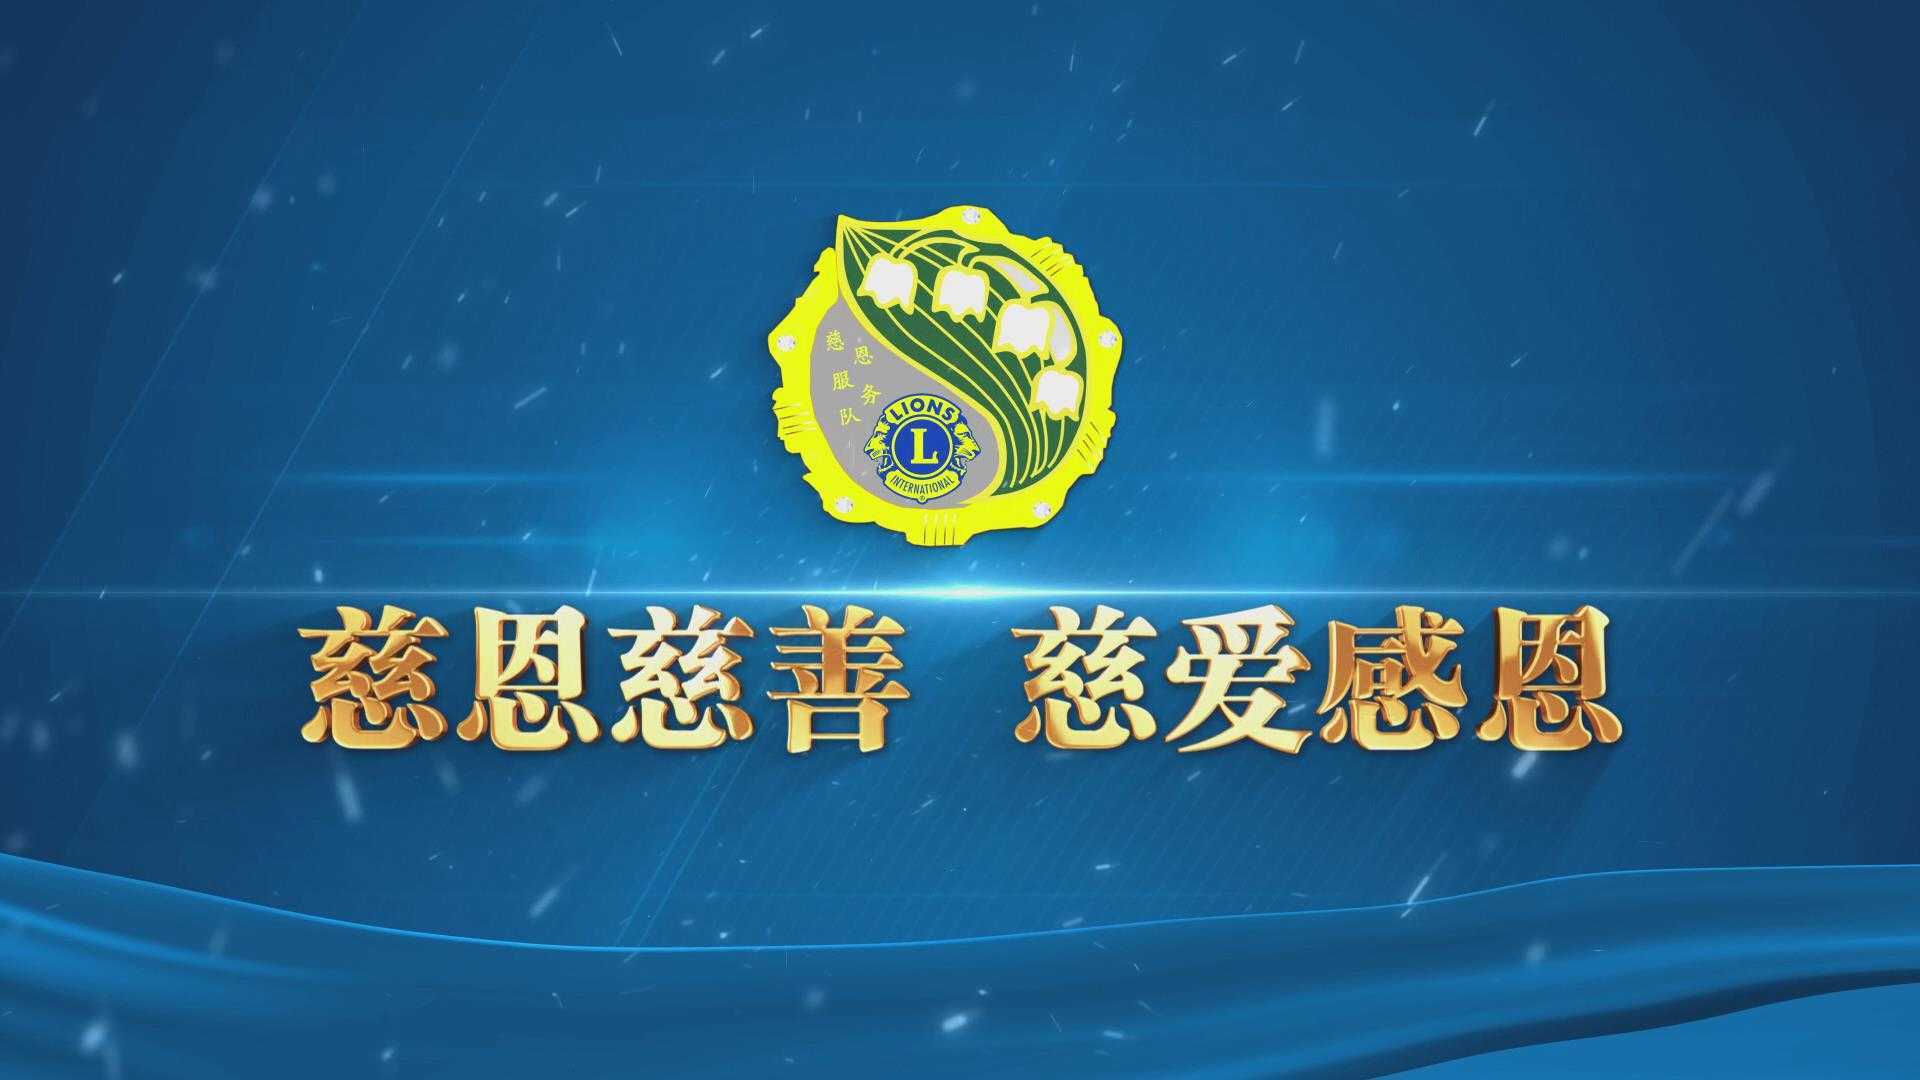 中国狮子联会大连慈恩服务队14年狮爱历程